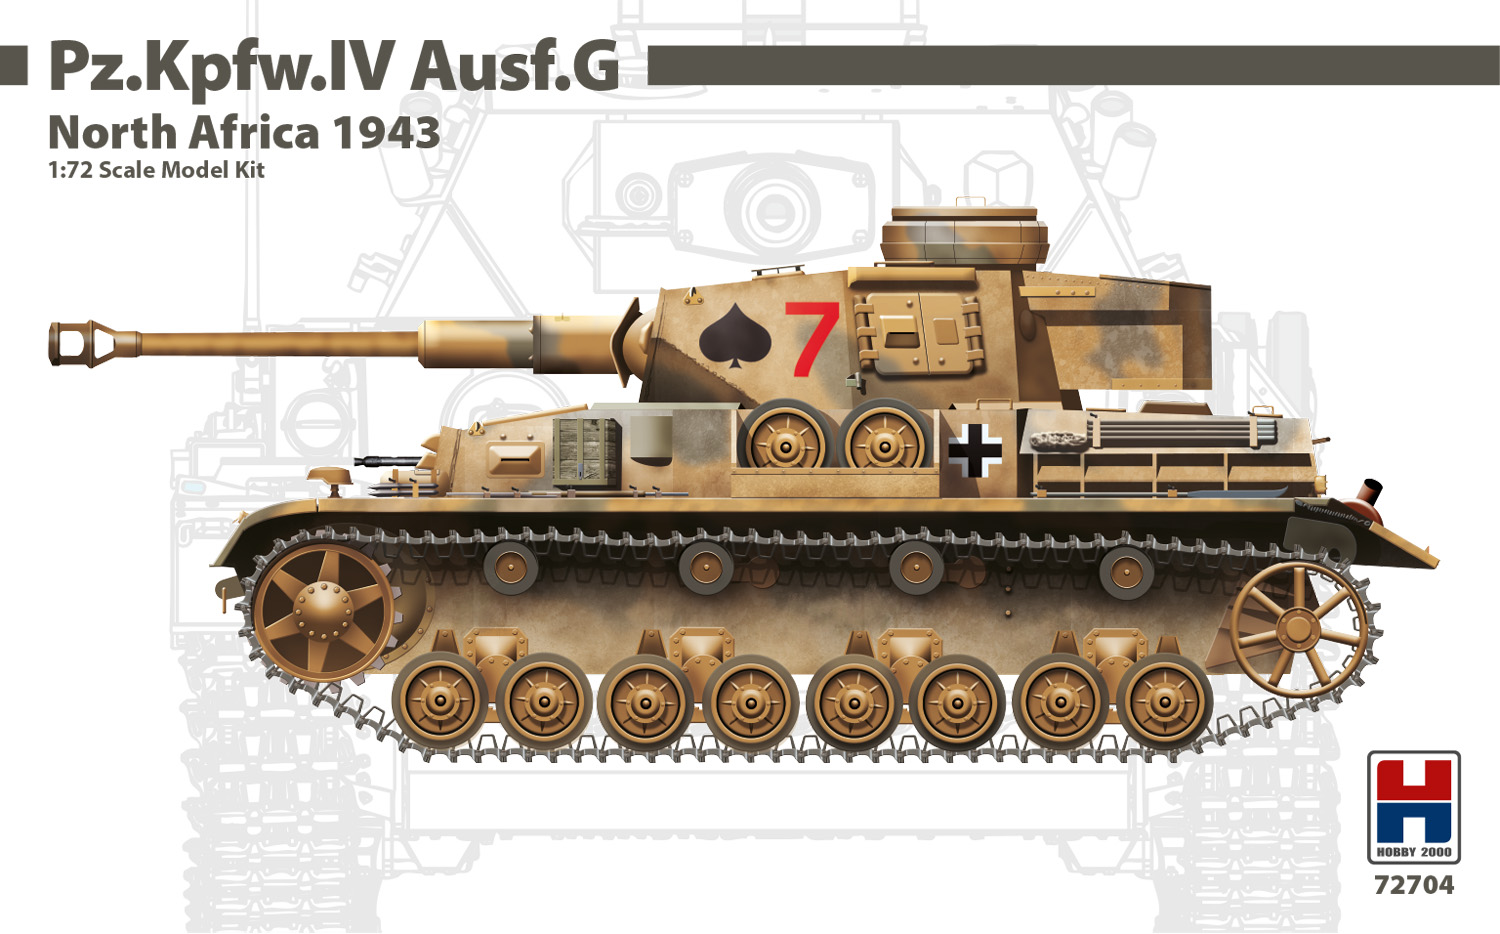 1/72 Pz.Kpfw.IV Ausf.G North Africa 1943 - DRAGON + CARTOGRAF